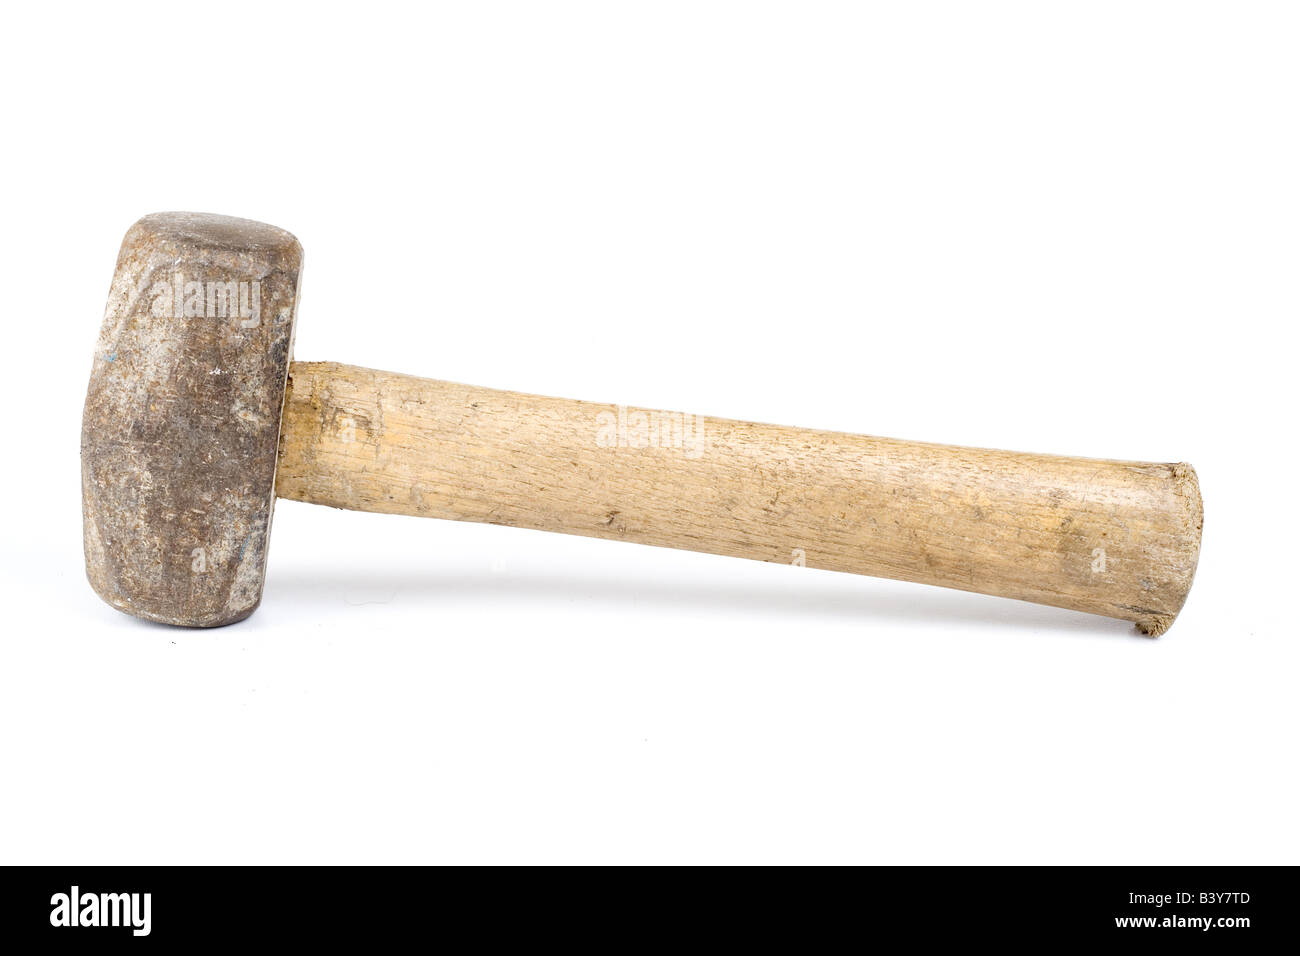 Schmutzige alte Hammer verwendet für Festzelt und Heringe in Hämmern  Stockfotografie - Alamy